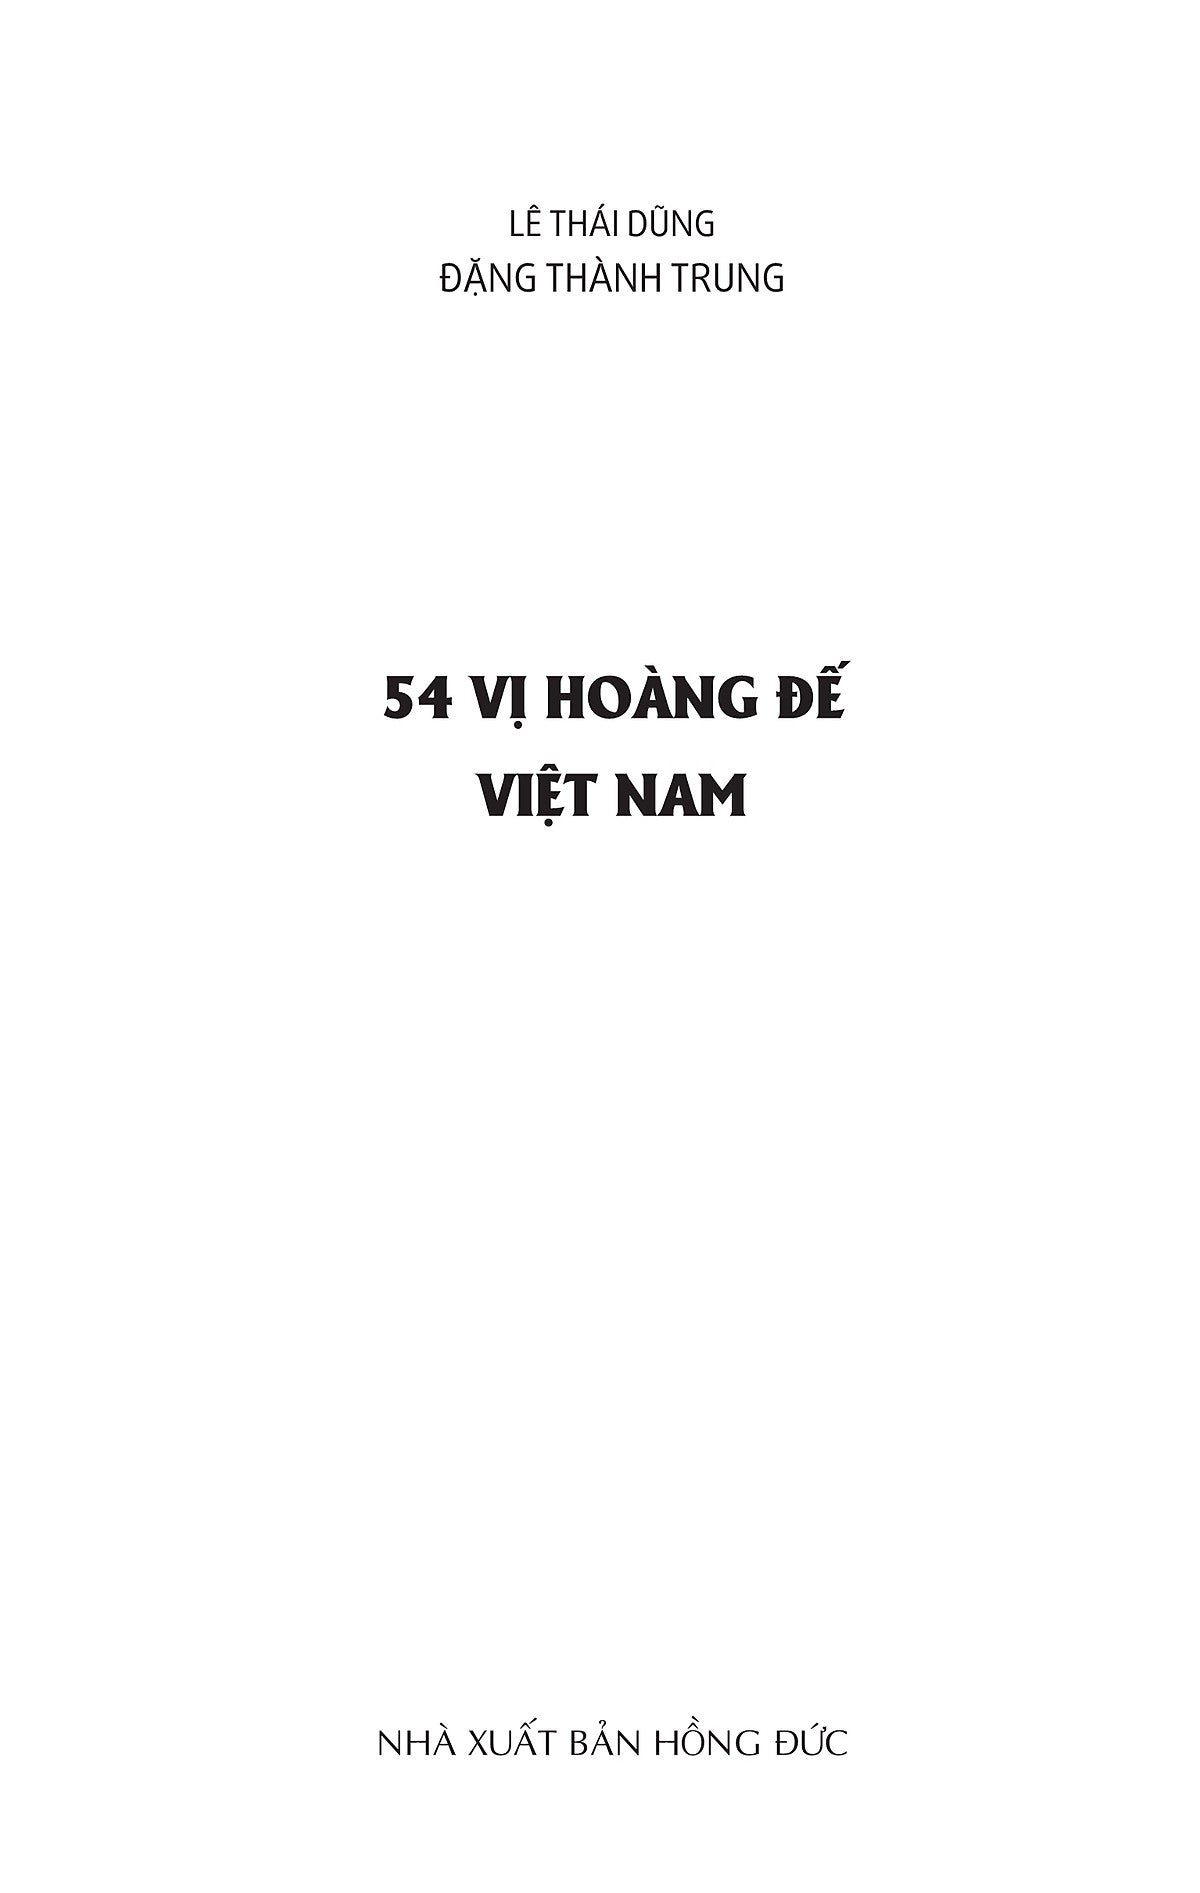 54 Vị Hoàng Đế Việt Nam